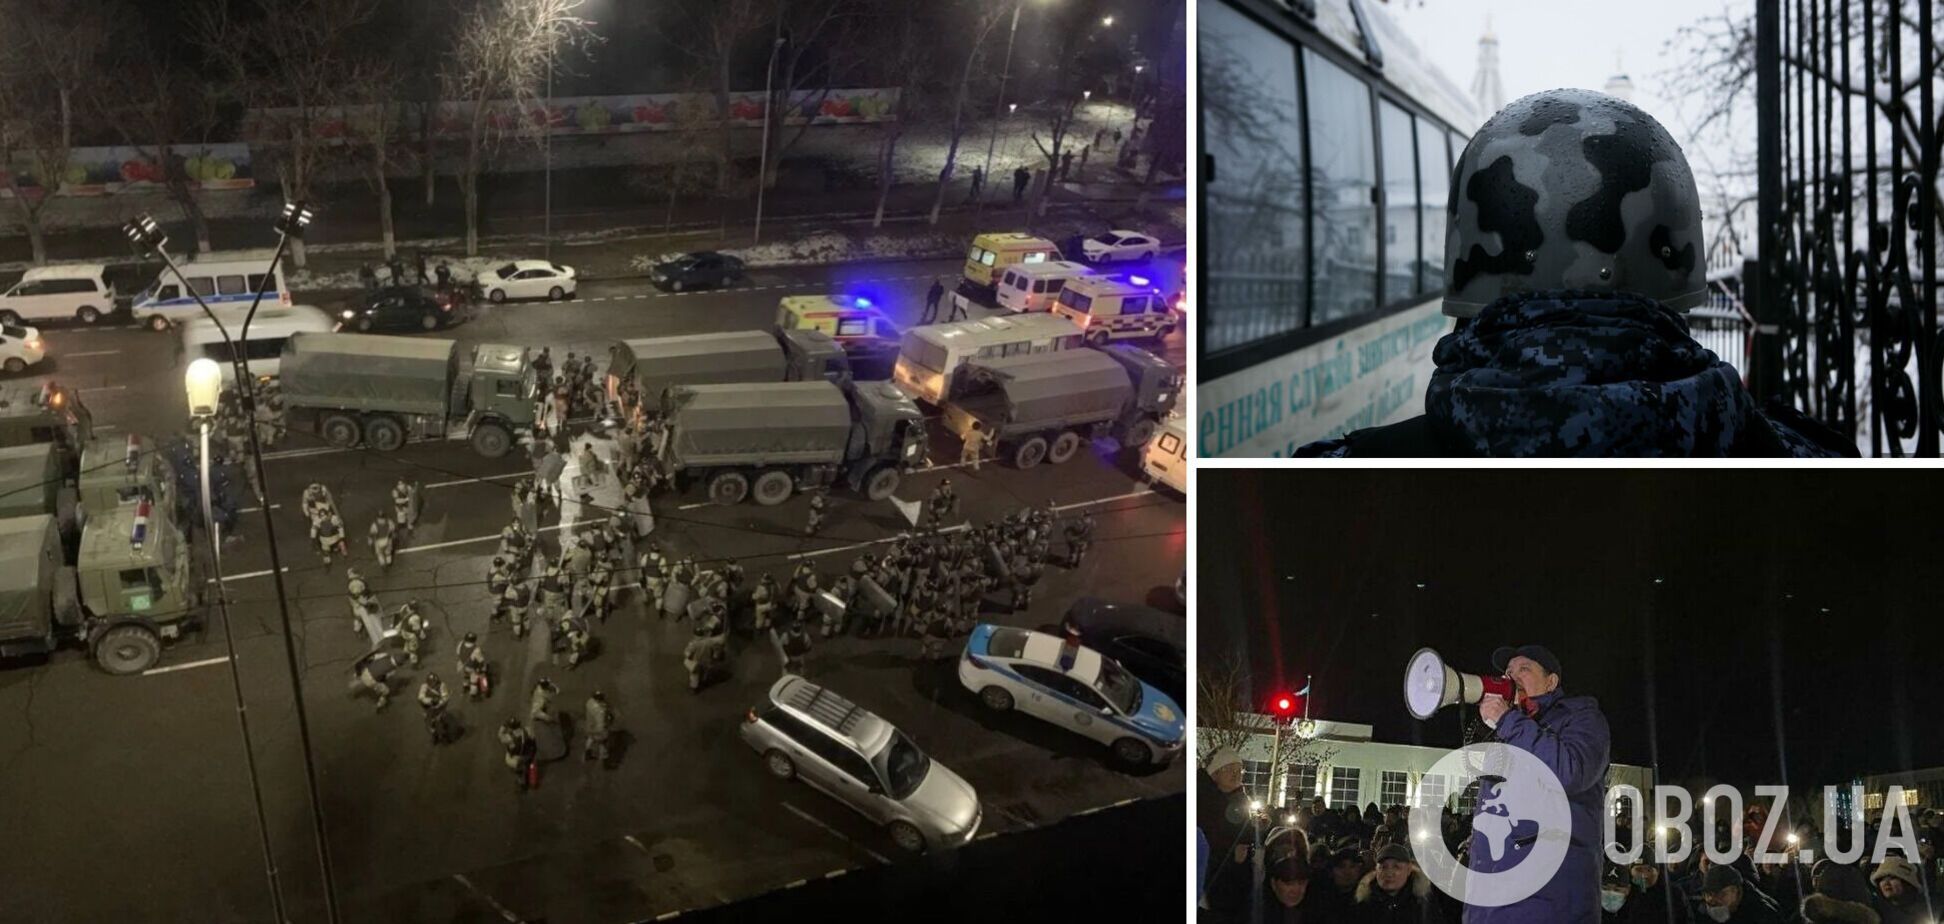 В Казахстане ввели чрезвычайное положение из-за протестов: сотни человек задержаны